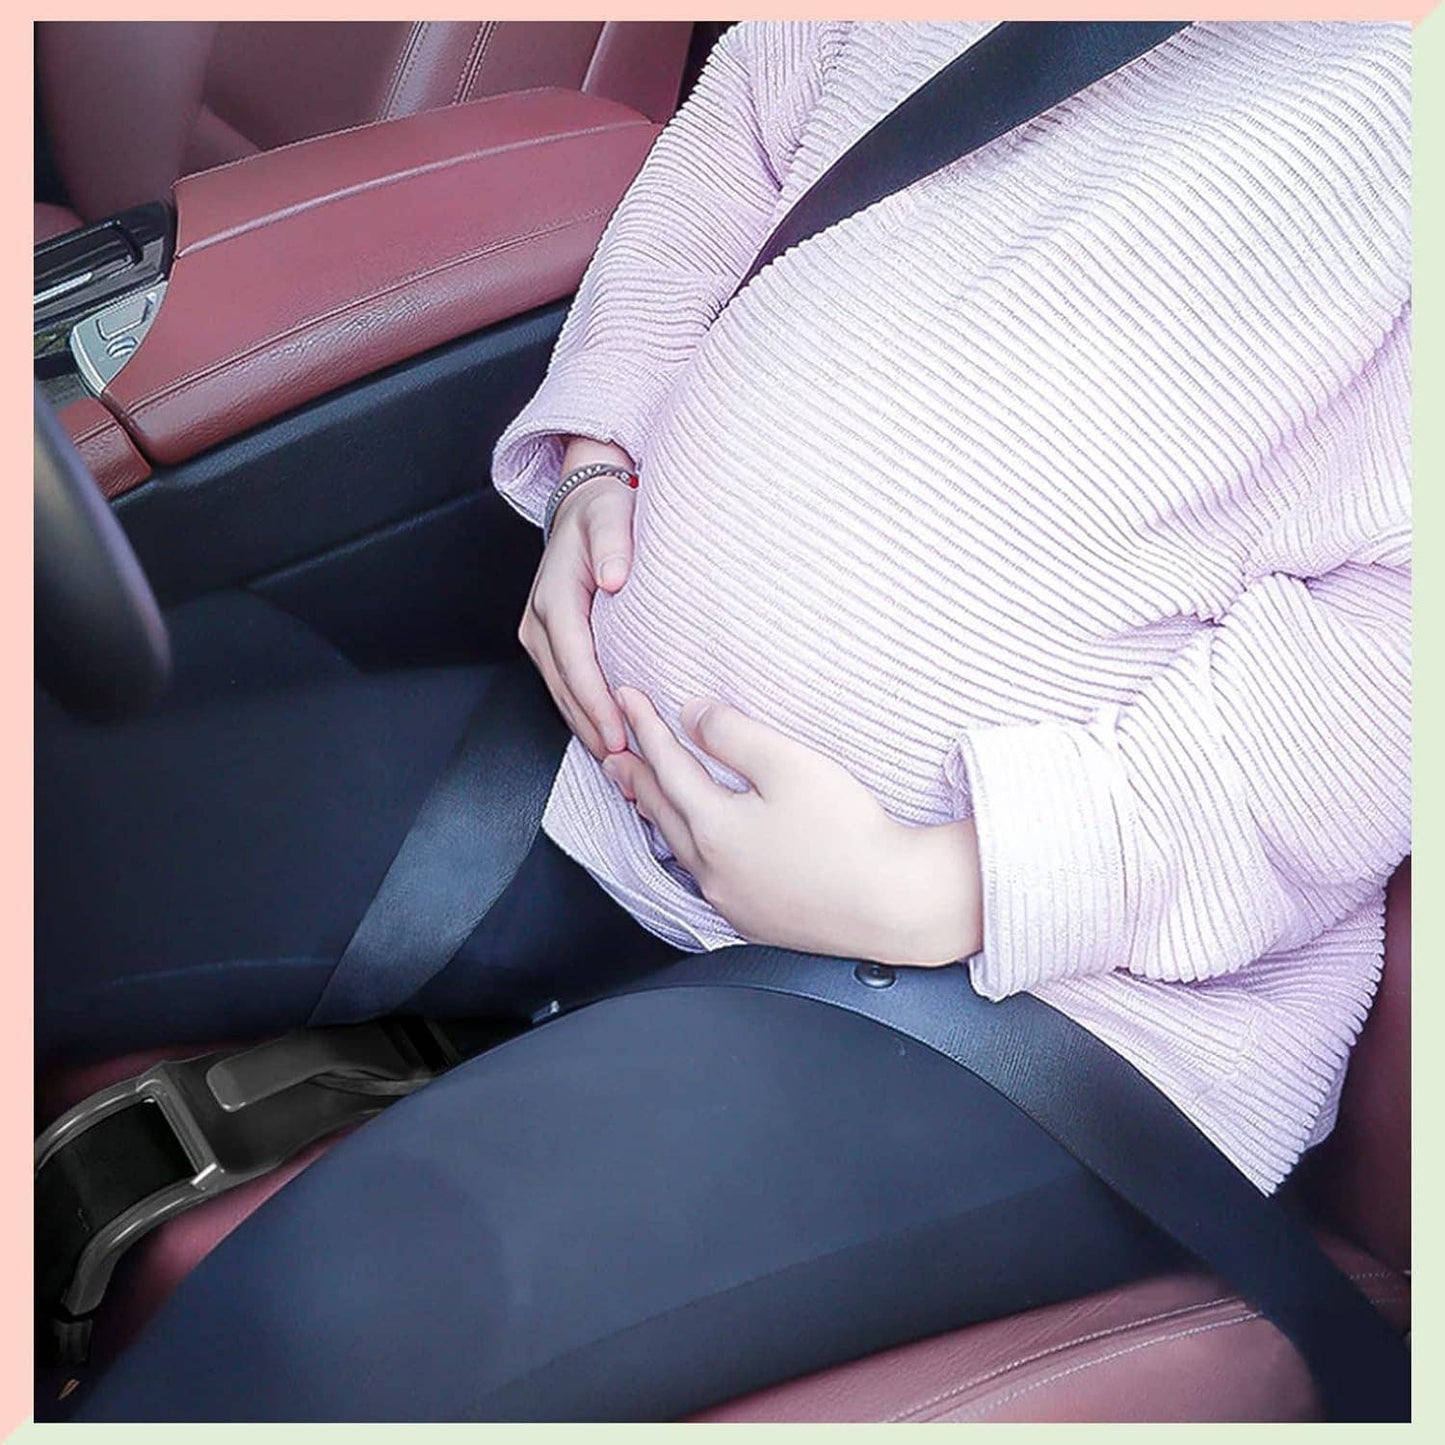 Pregnancy seat bump strap